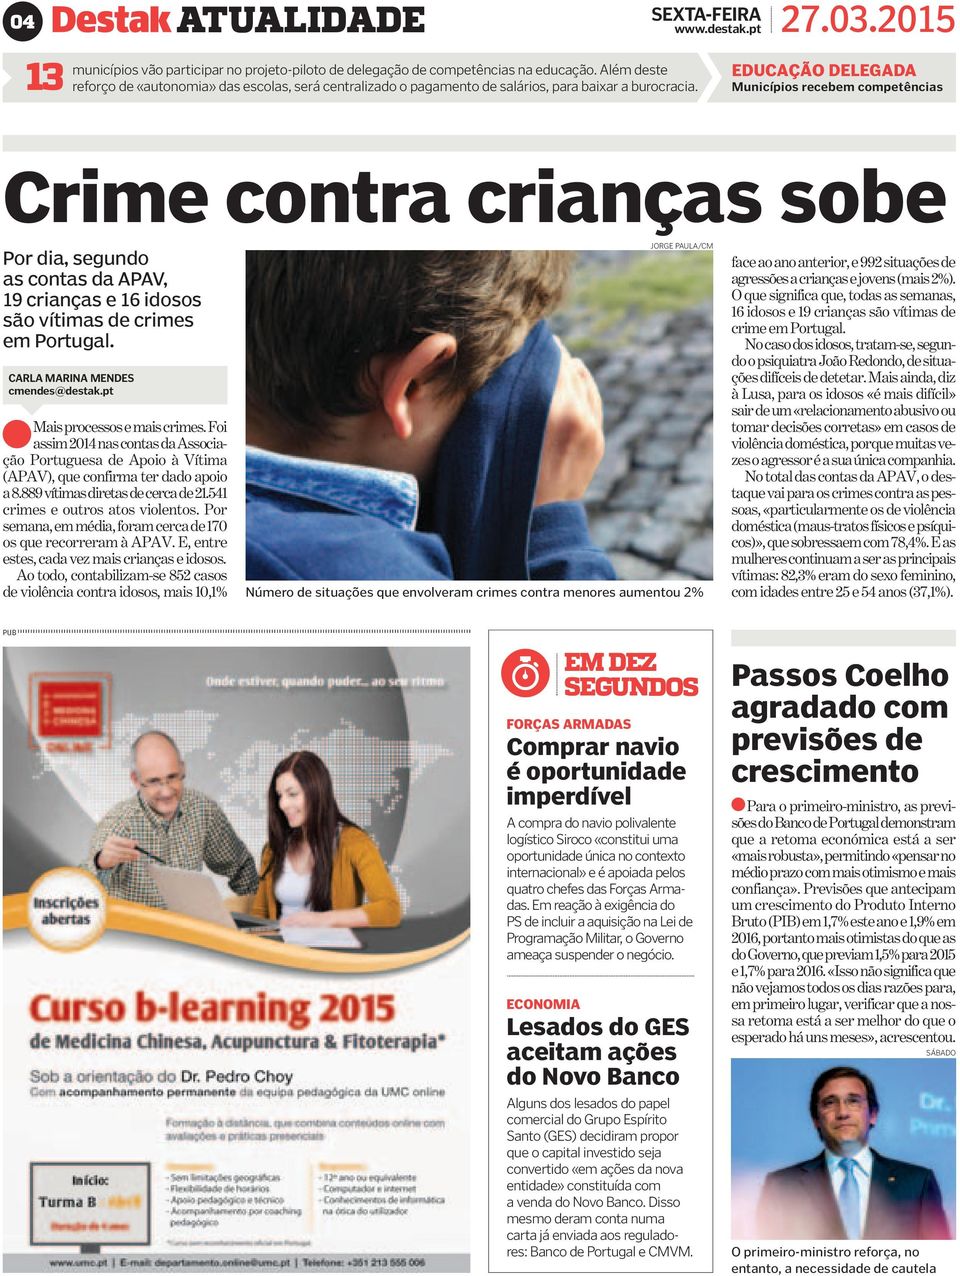 EDUCAÇÃO DELEGADA Municípios recebem competências Crime contra crianças sobe Por dia, segundo as contas da APAV, 19 crianças e 16 idosos são vítimas de crimes em Portugal.